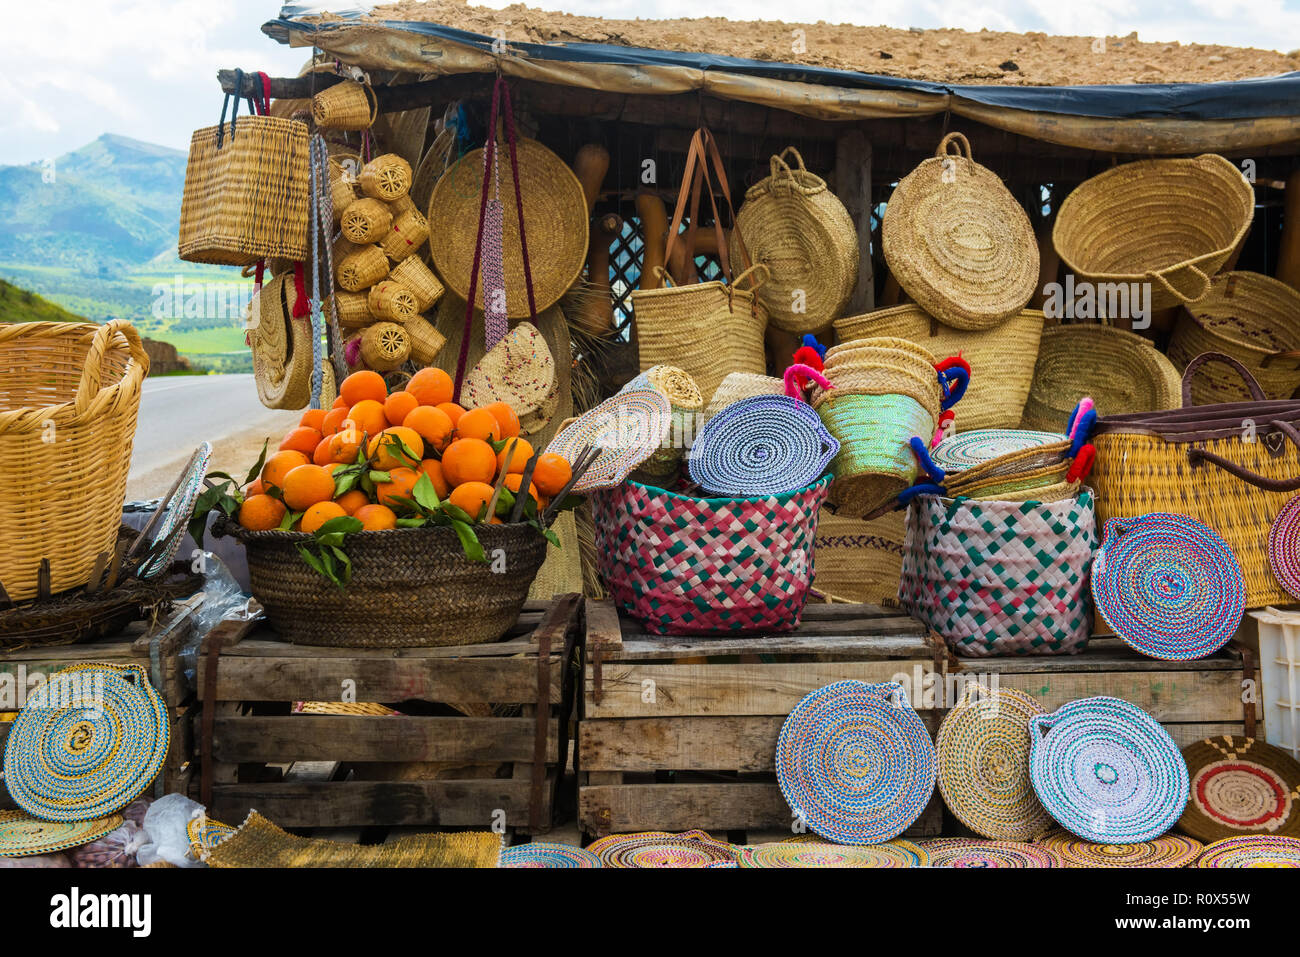 Handwerk wicker Hüte, Orangen und andere Souvenirs in Marokko Markt Stockfoto